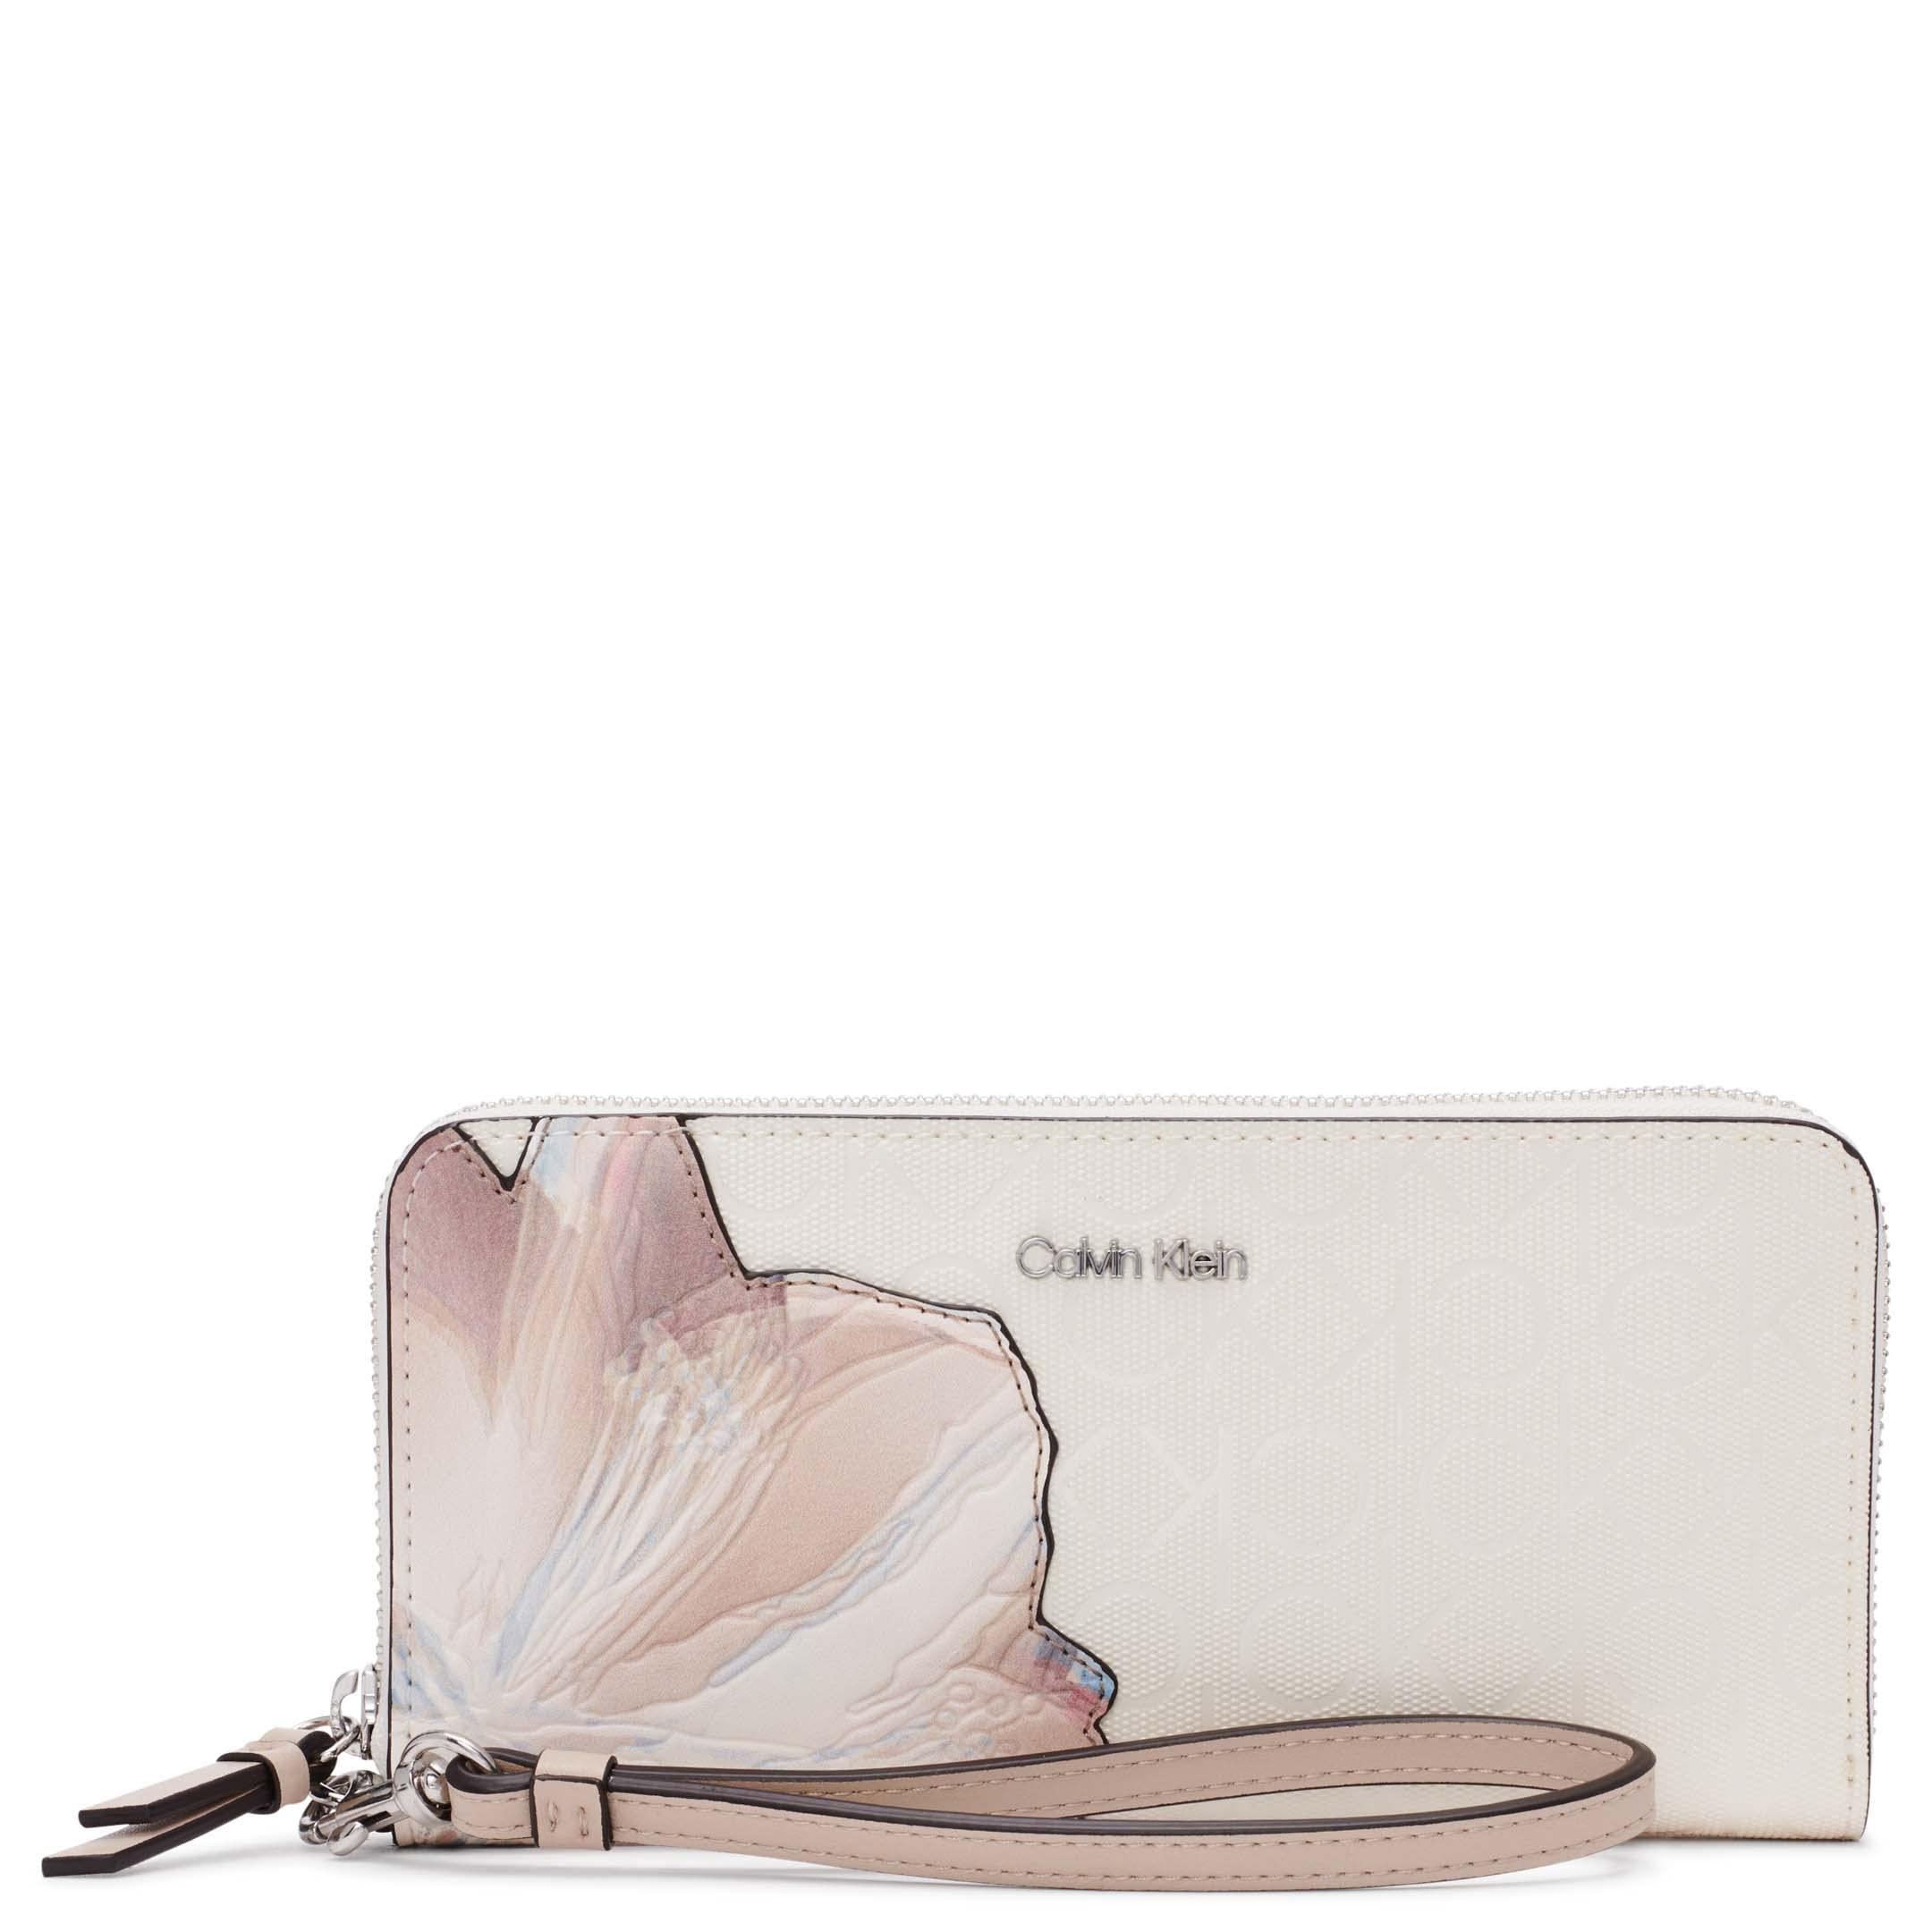 viering Ecologie winnen Calvin Klein Key Item Saffiano Continental Zip Around Wallet With Wristlet  Strap in Pink | Lyst